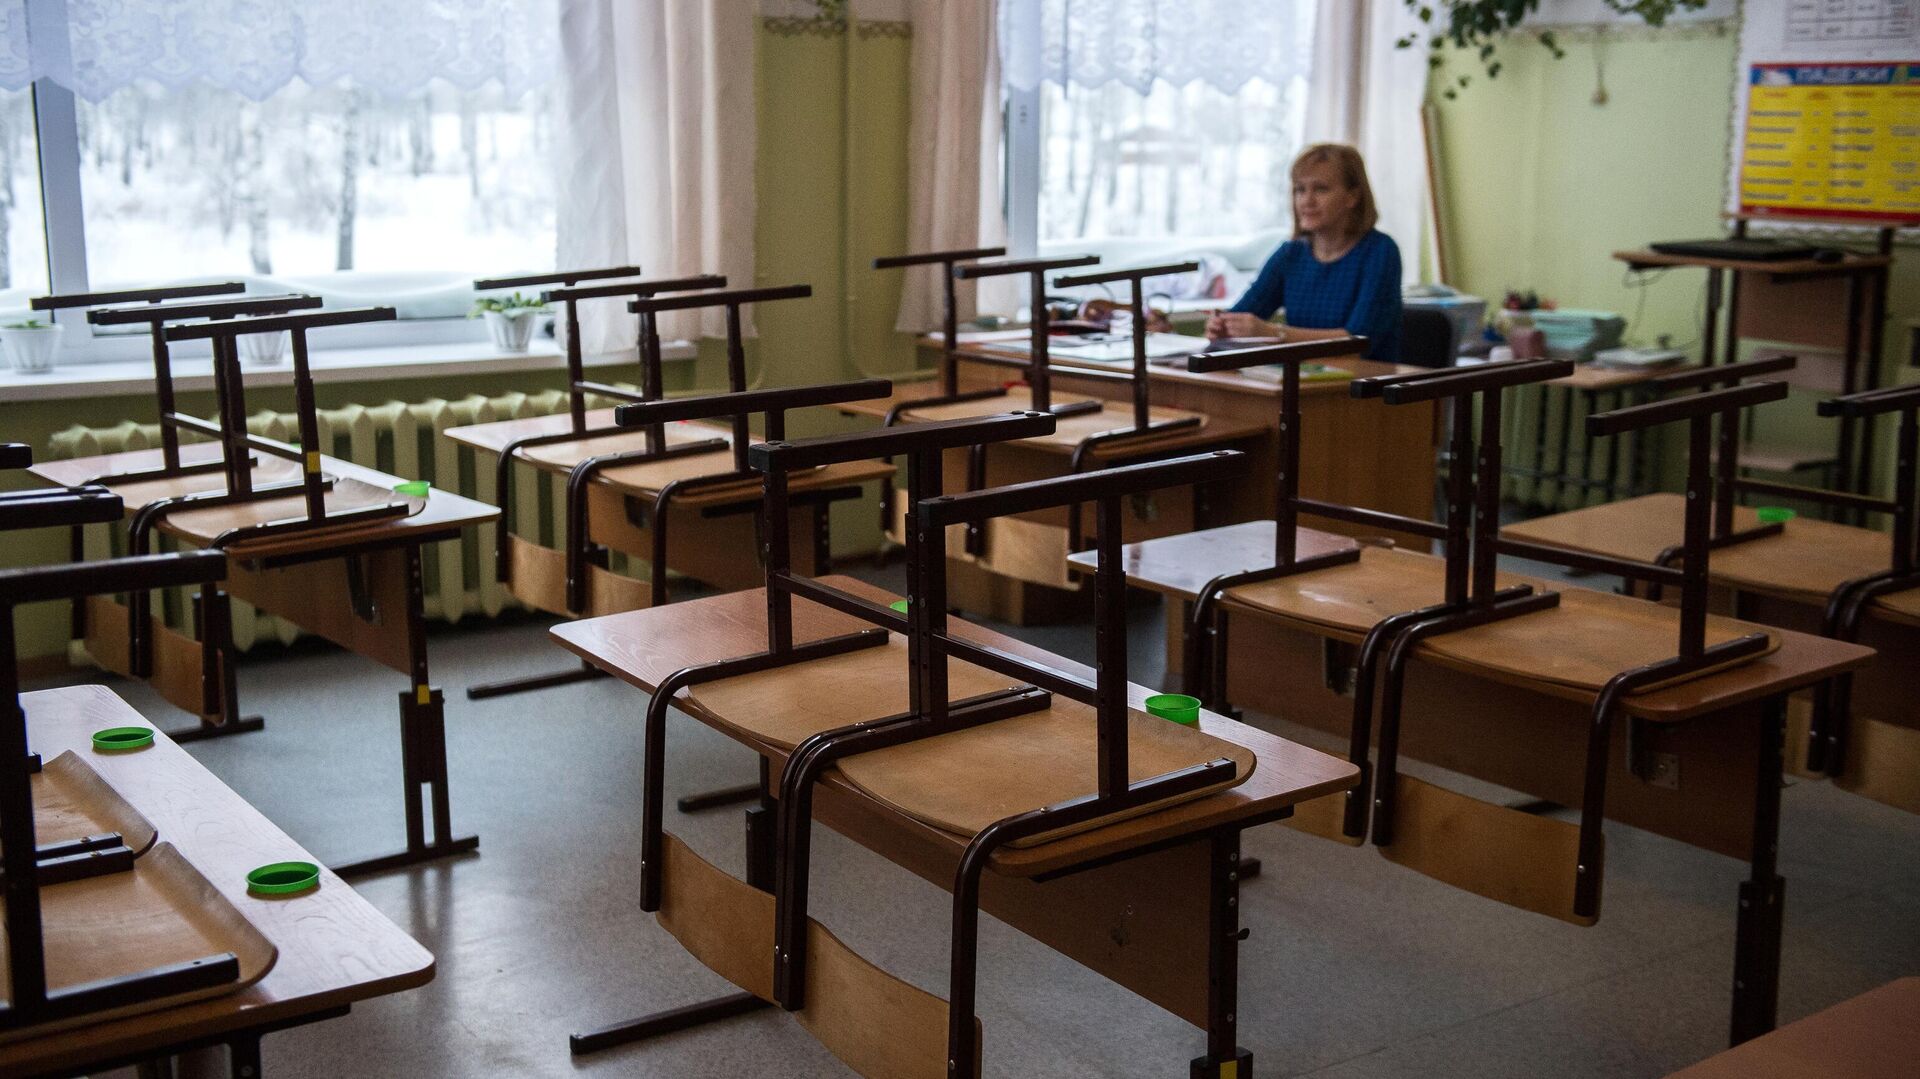 В Москве мальчик принес в школу нож и угрожал им одноклассникам